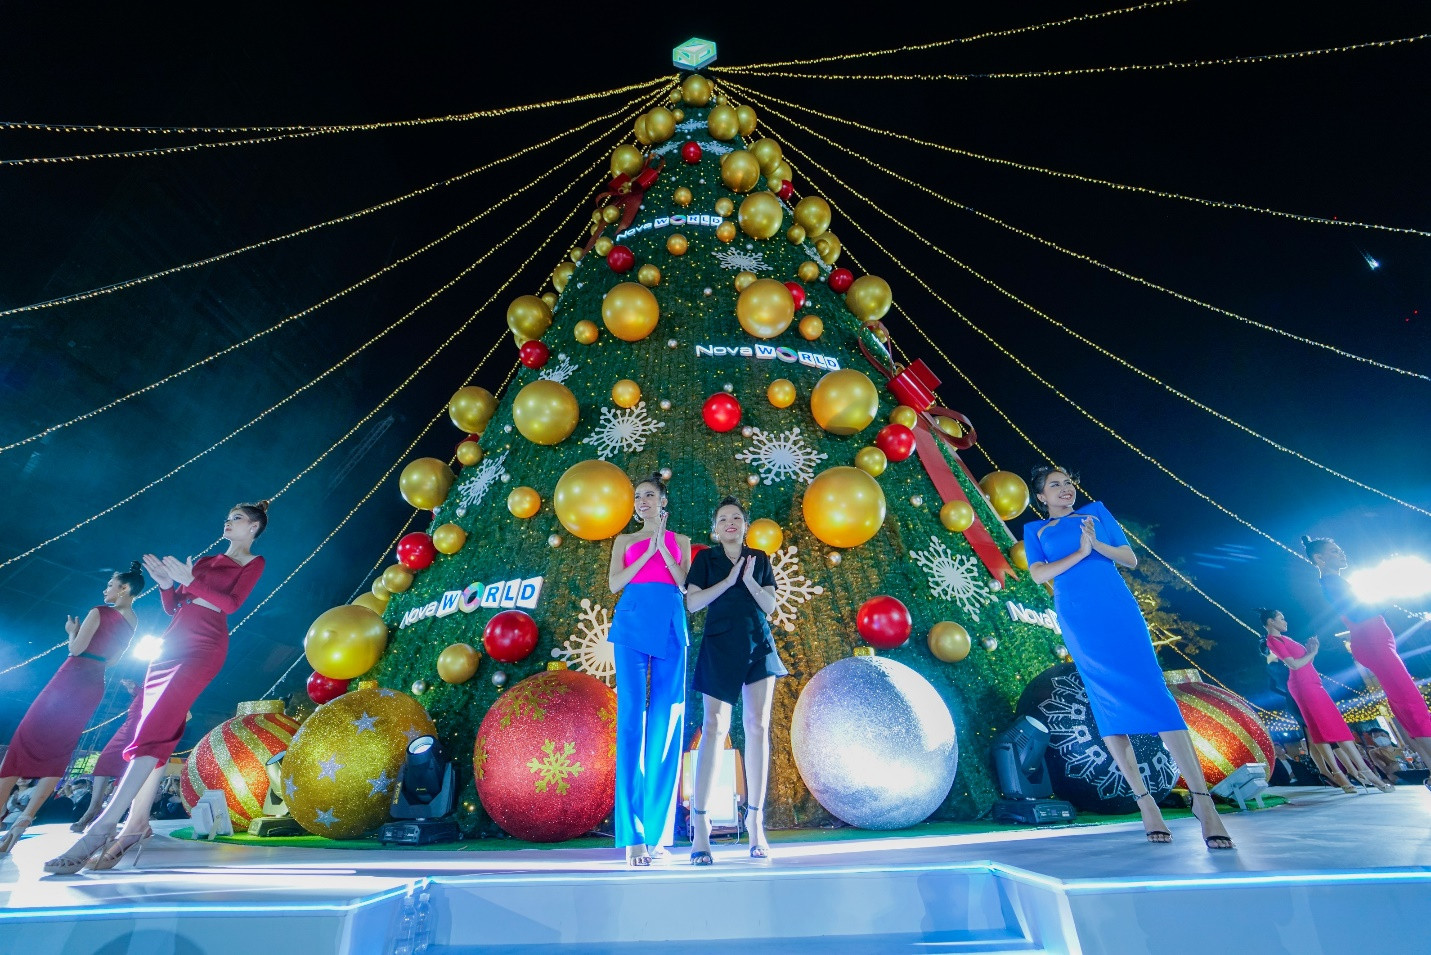 Sân khấu độc đáo quanh cây thông Noel cao 25m là điểm nhấn của chuỗi sự kiện cuối năm tại Novaland Gallery.